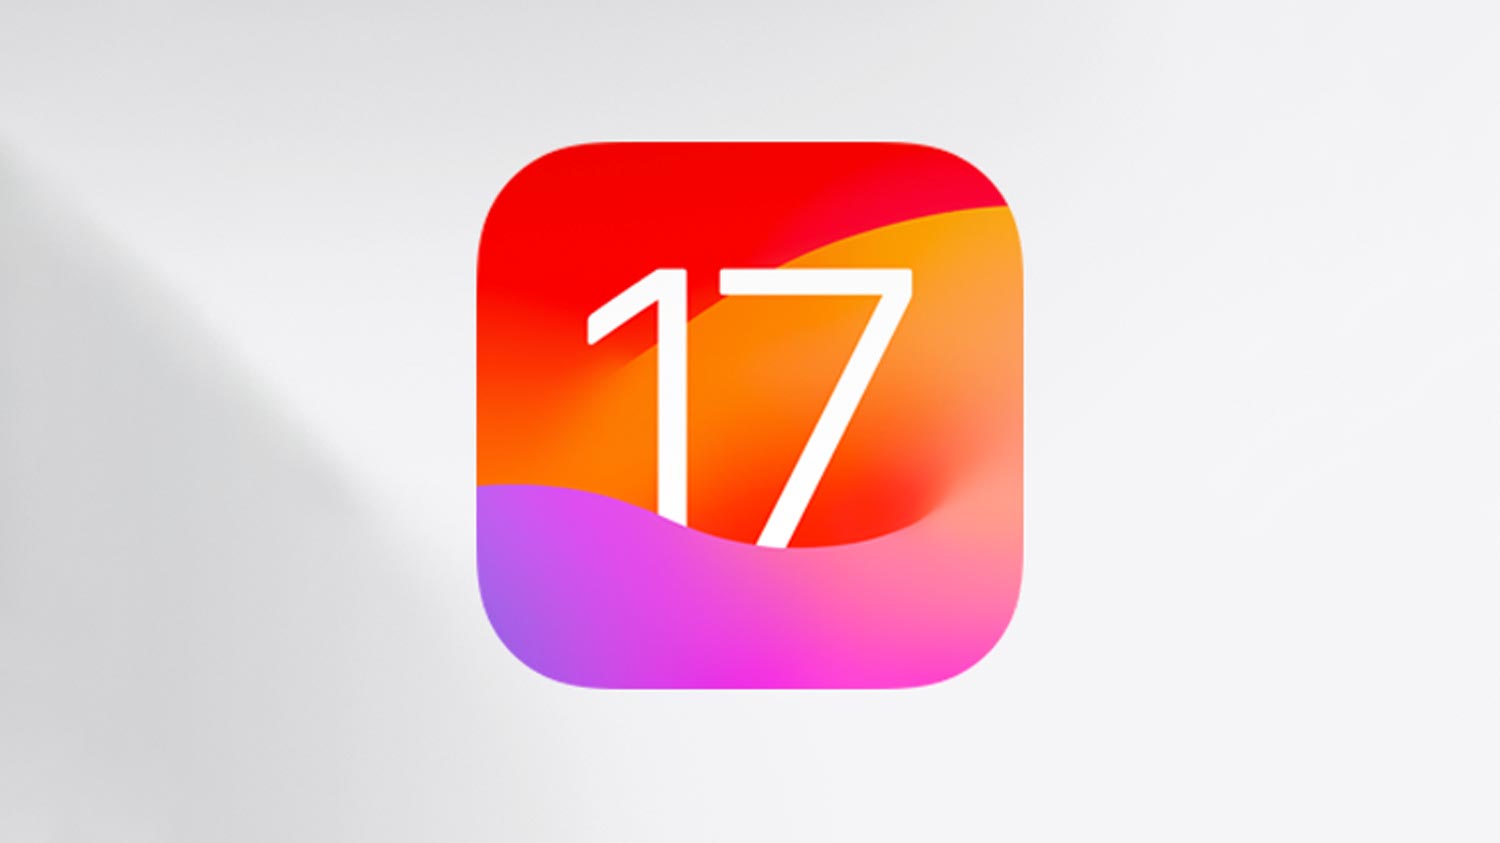 Ini Senarai 20 iPhone Yang Akan Menerima iOS 17